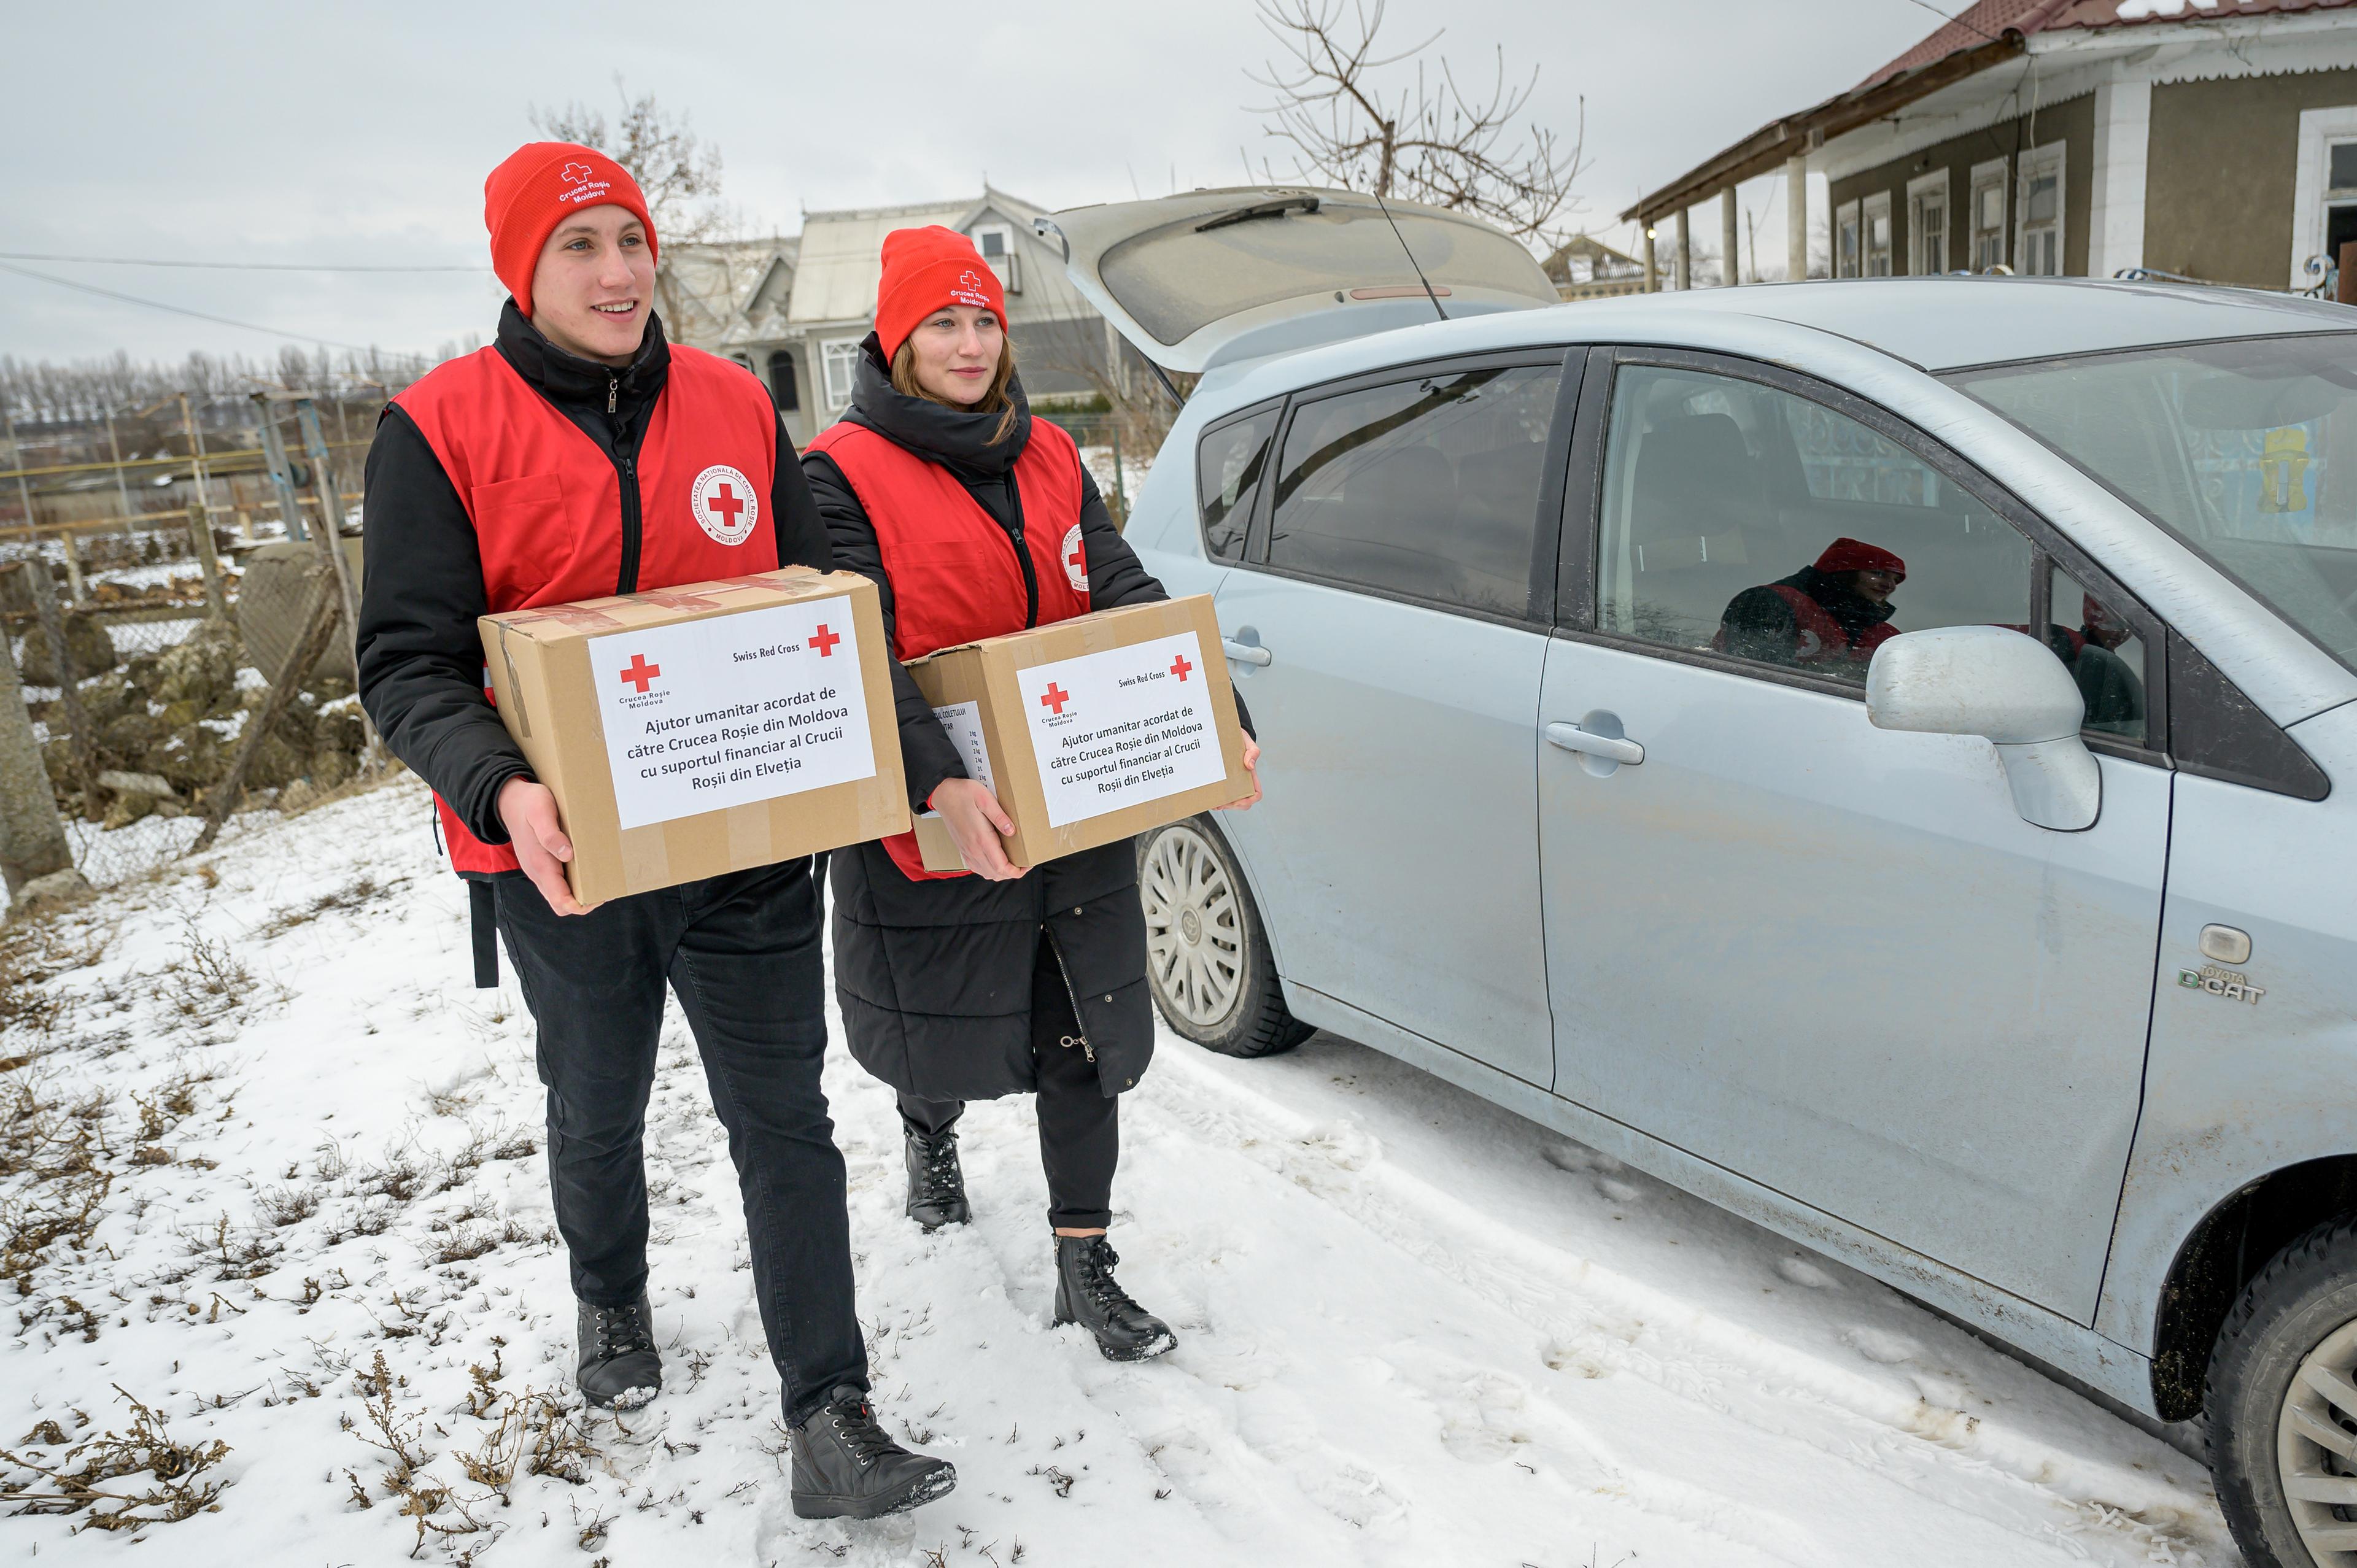 Deux jeunes adultes tiennent un paquet dans leurs mains et marchent à côté d'une voiture. Ils sont habillés de vêtements épais et portent un gilet et un bonnet rouges. Il y a de la neige sur le sol.